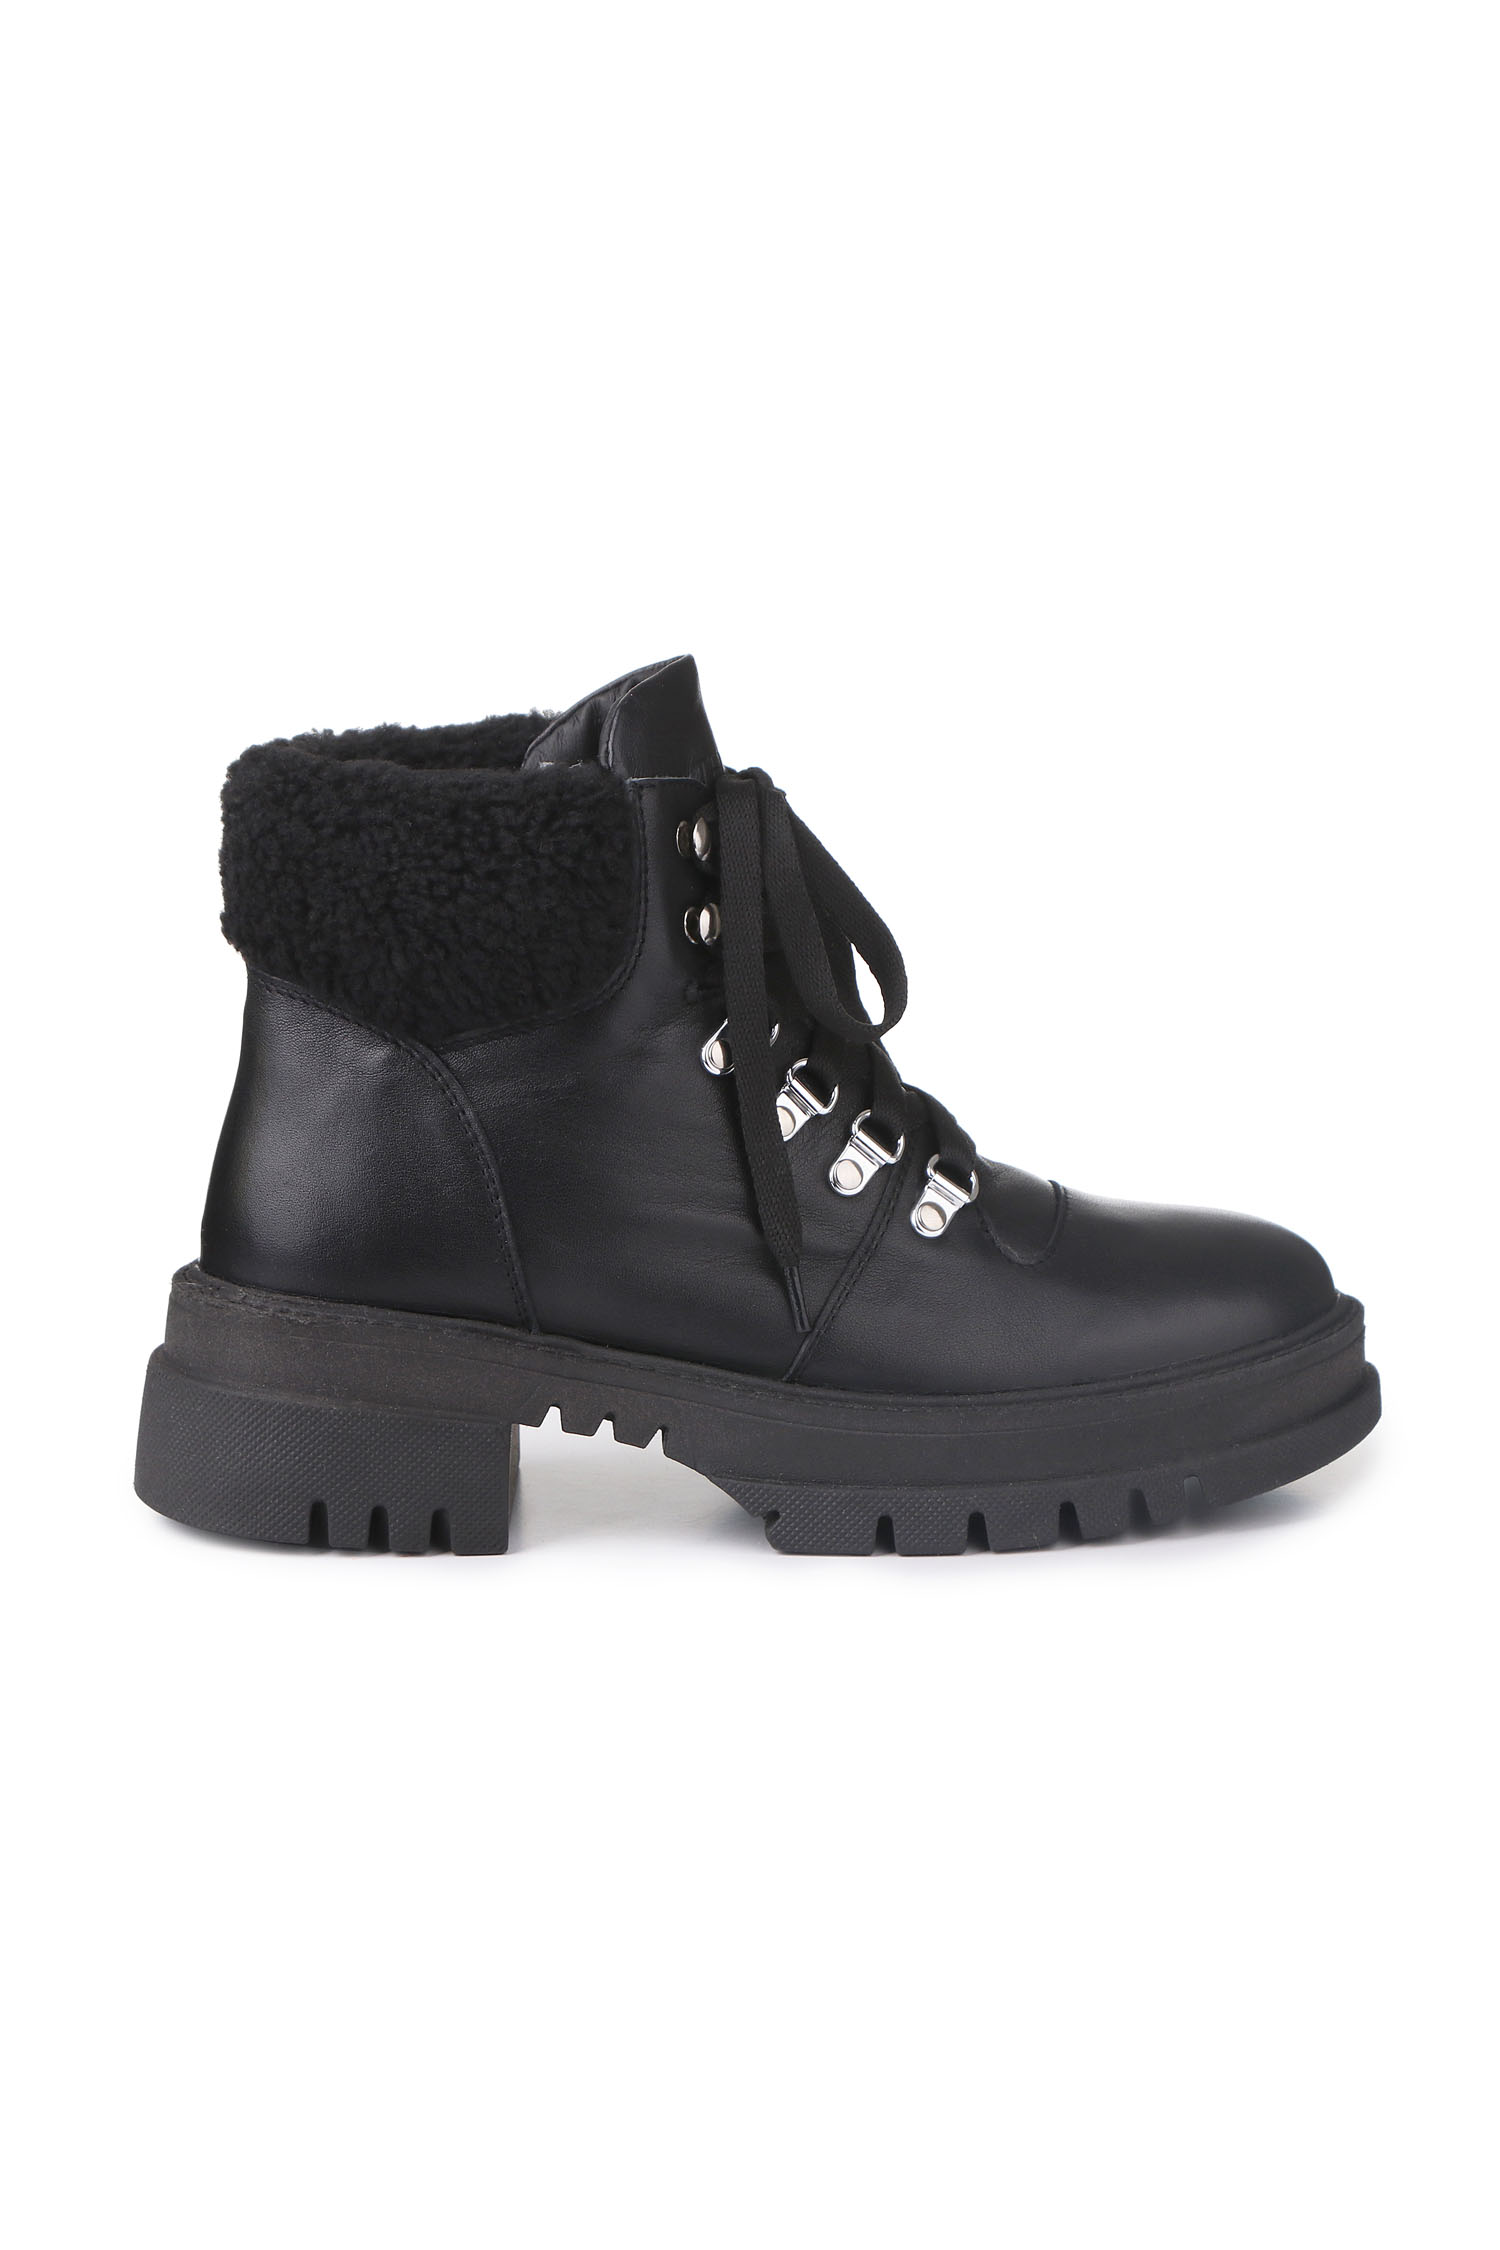 Зимові черевики Hiking boots чорні з чорним хутром - THE LACE photo 123284